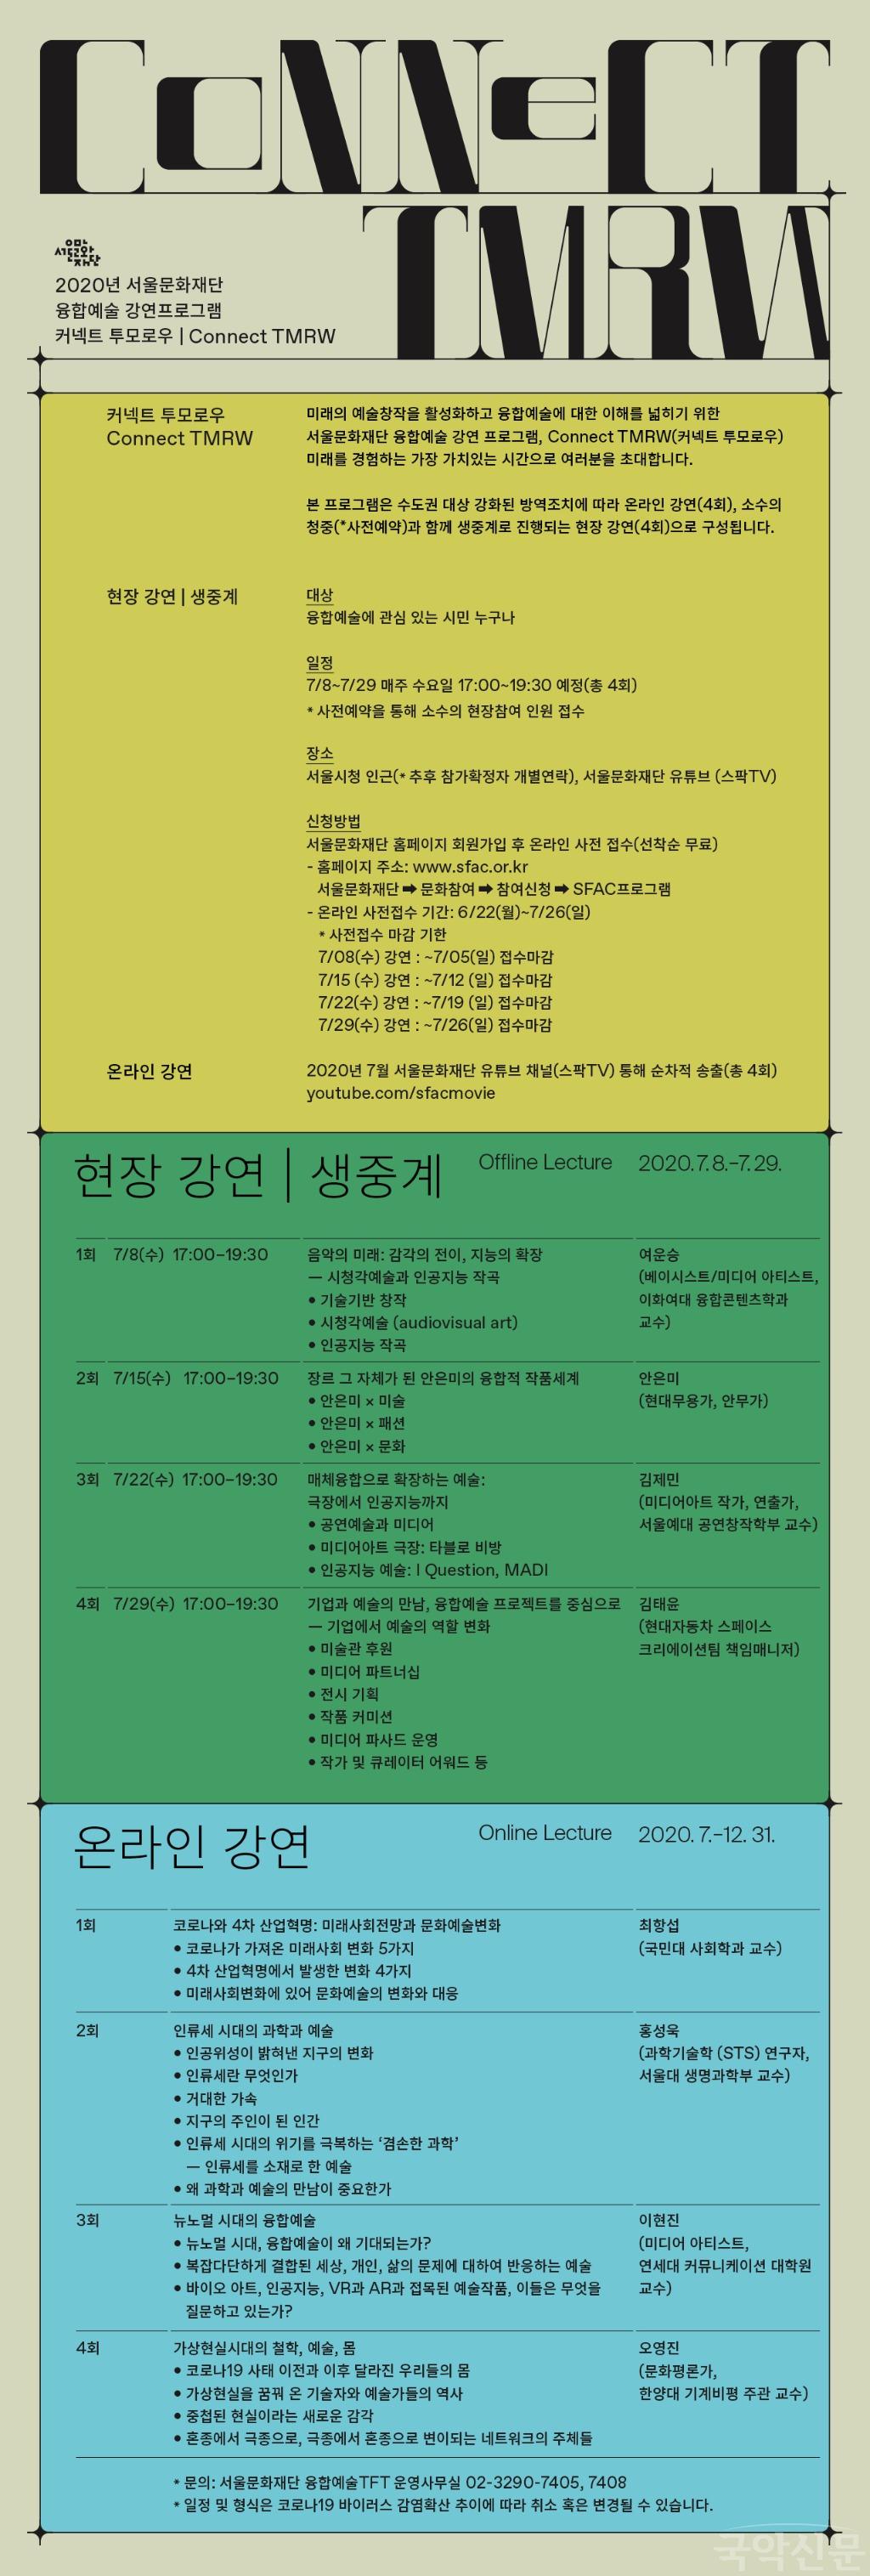 [사진]4. 서울문화재단 융합예술 강연 프로그램 '커넥트투모로우' 웹플라이어.jpg